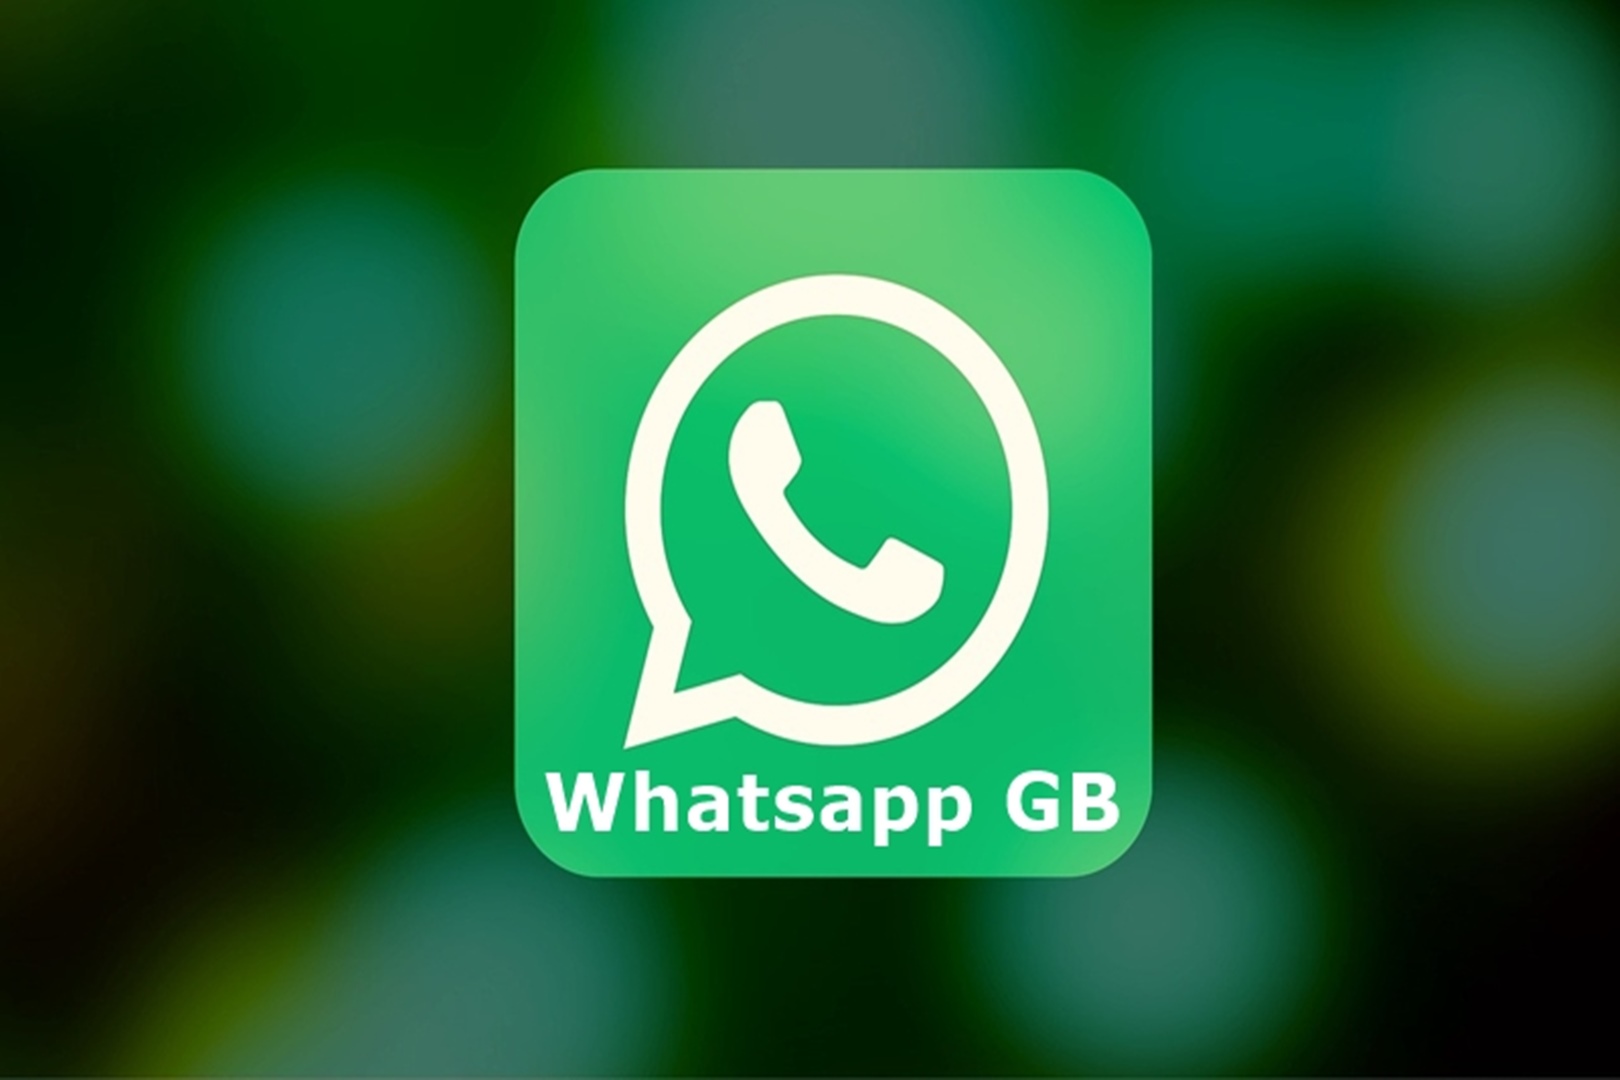 Terbaru di Akhir Agustus! Link Download GB WhatsApp iOS, Fitur Unggulan Sudah Lengkap